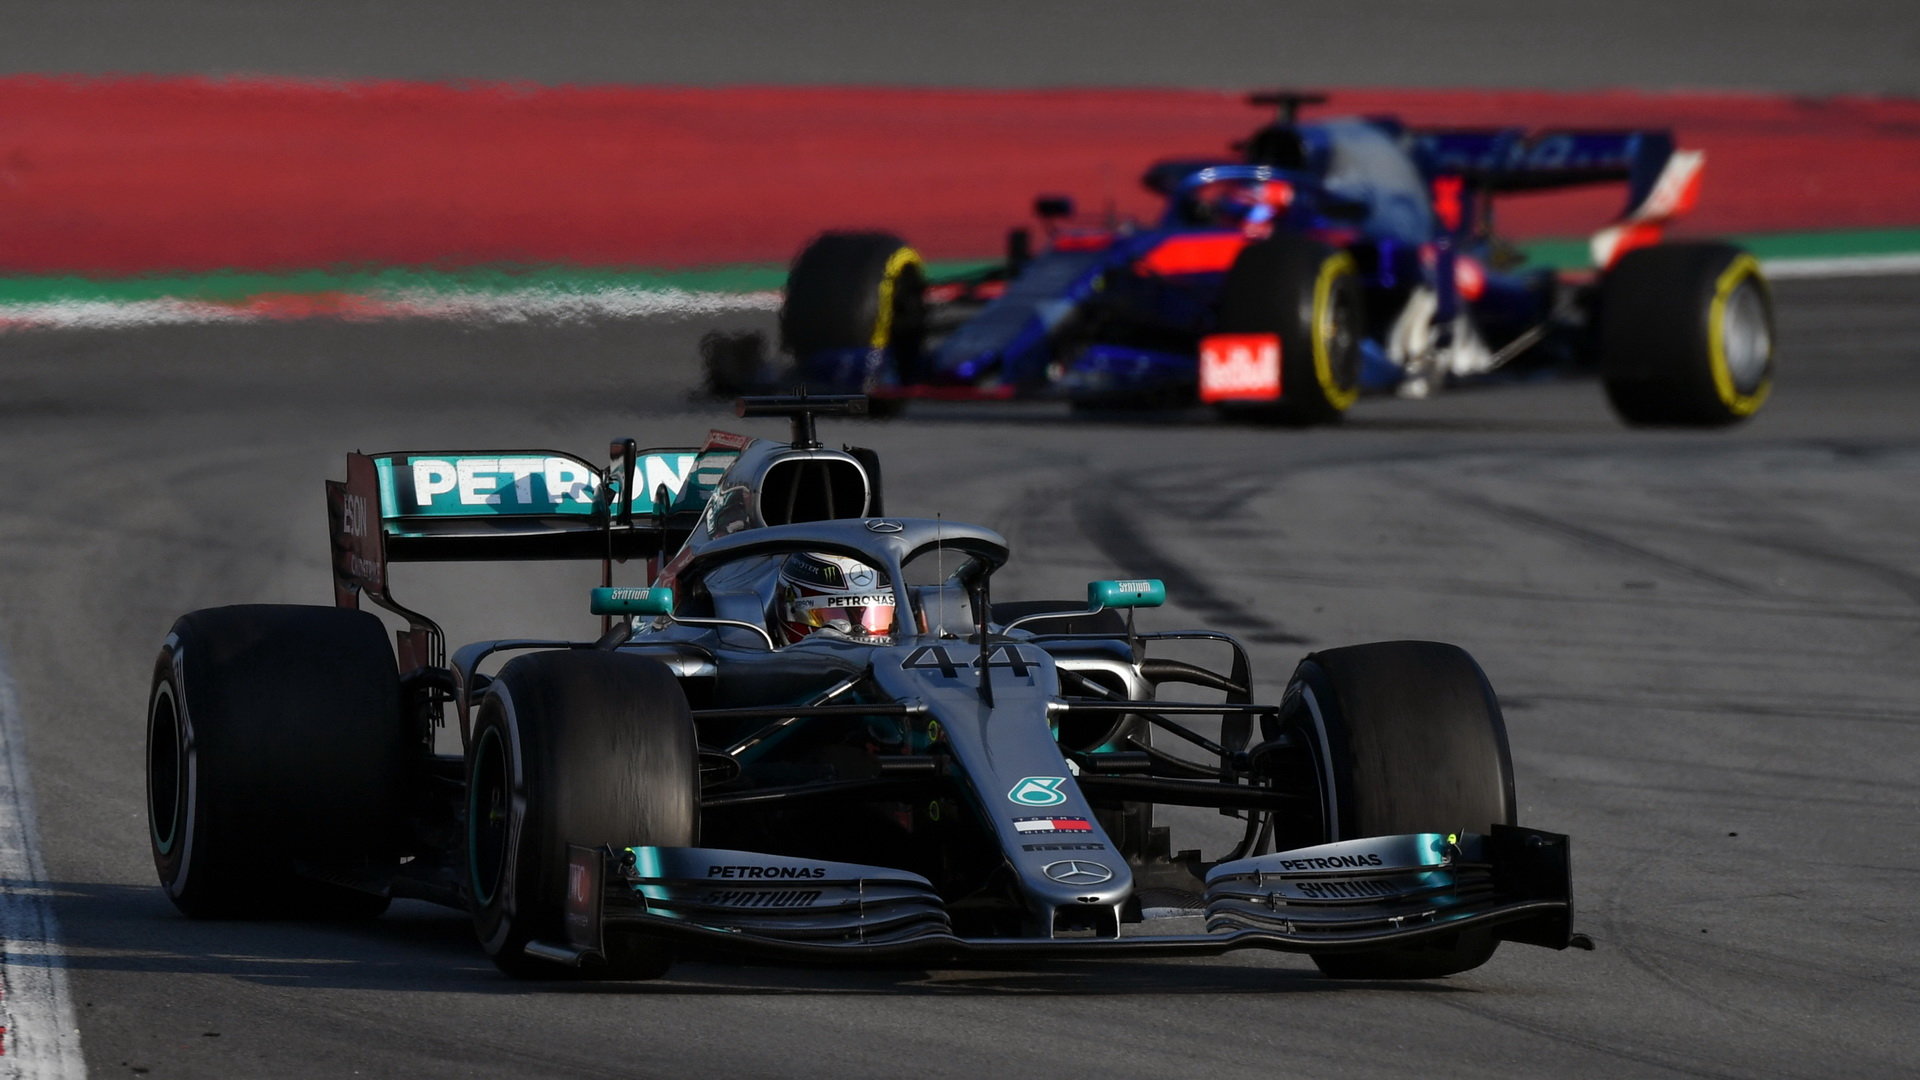 Lewis Hamilton ve voze Mercedes F1 W10 EQ Power+ při třetím dnu testů v Barceloně